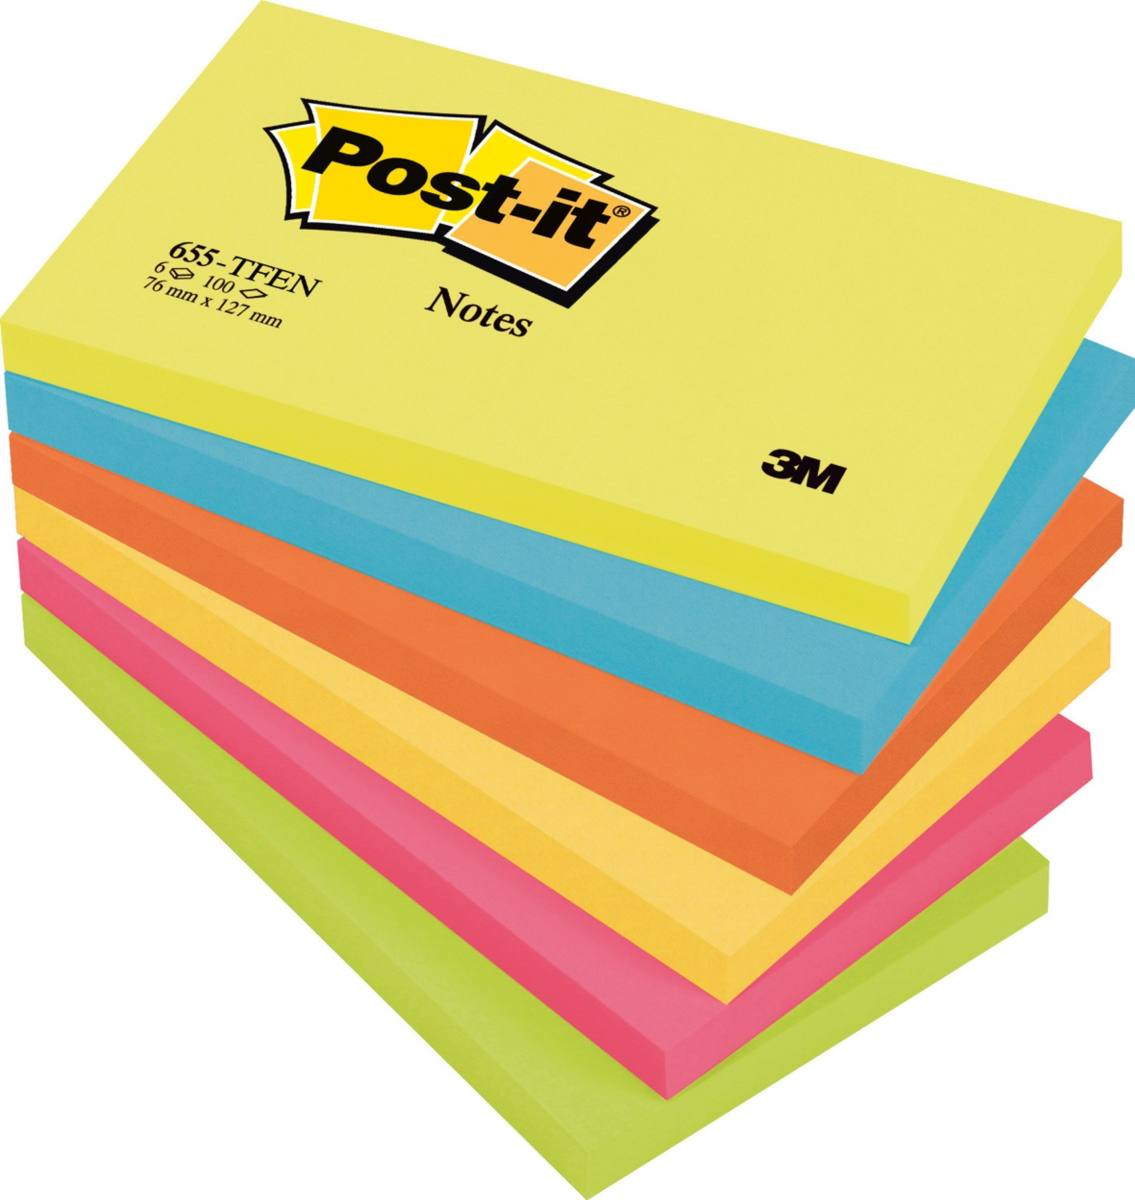 3M Post-it Notes 655TFEN, 127 x 76 mm, neongroen, neonoranje, ultrablauw, ultrageel, ultraroze, 6 blokken van elk 100 vellen